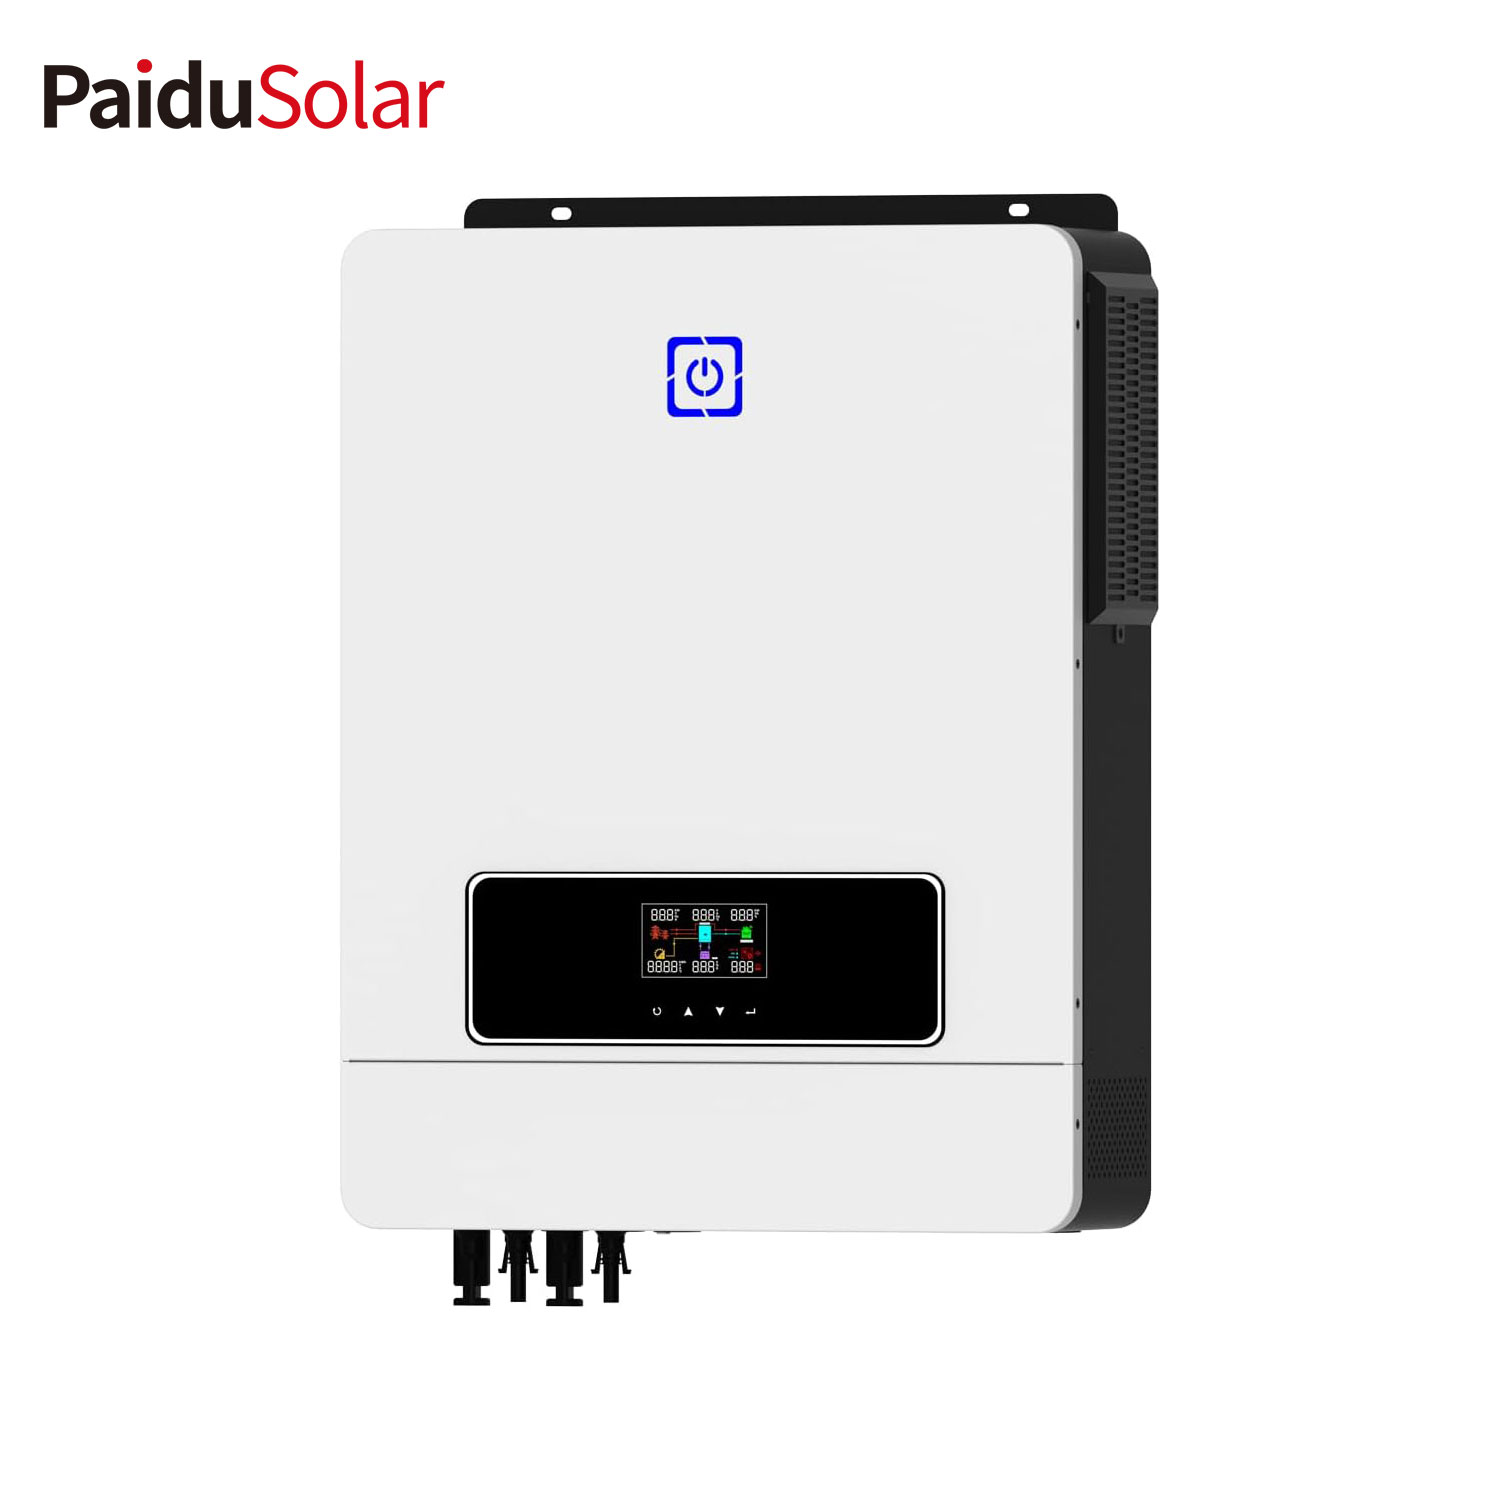 PaiduSolar 8,2 kW Solar-Hybrid-Wechselrichter mit integriertem Laderegler und reinem Sinus-Wechselrichter für die Energiespeicherung zu Hause